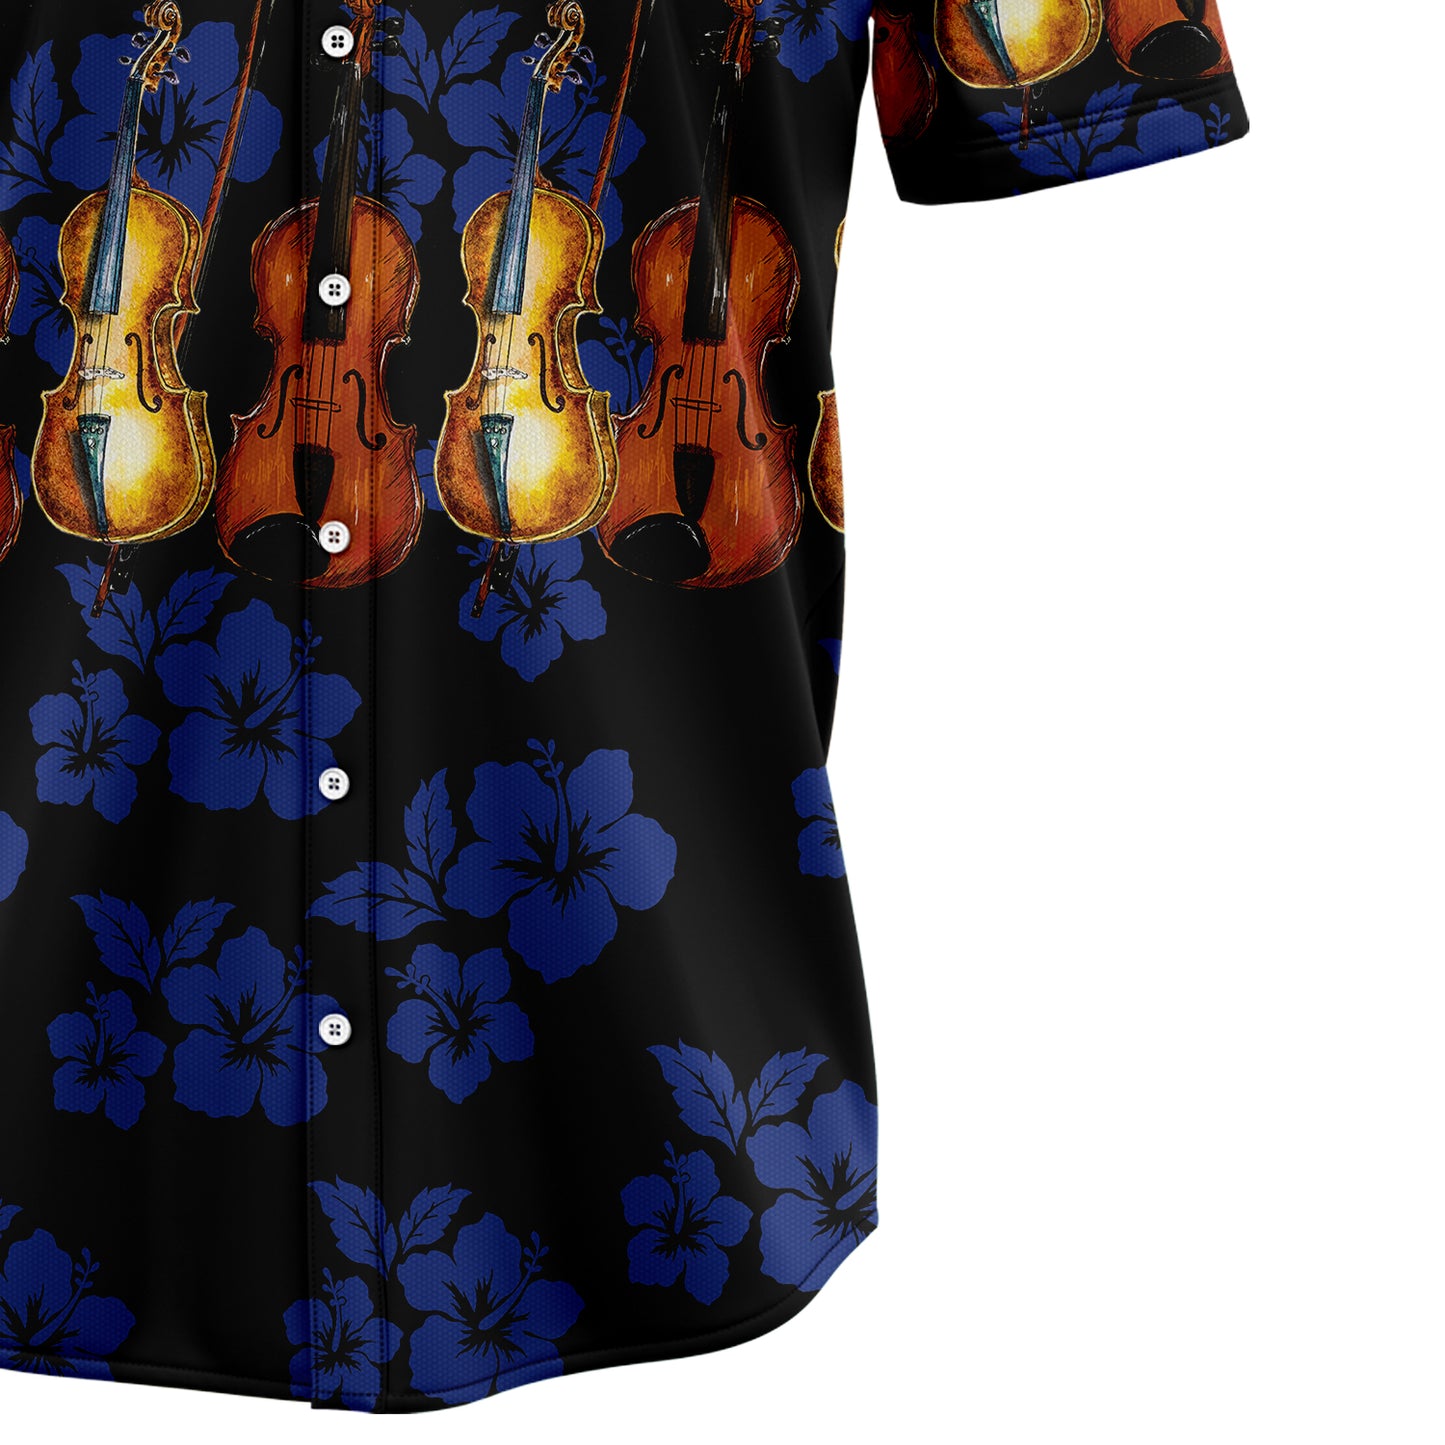 Violin For Vacation G5714 Hawaiian Shirt